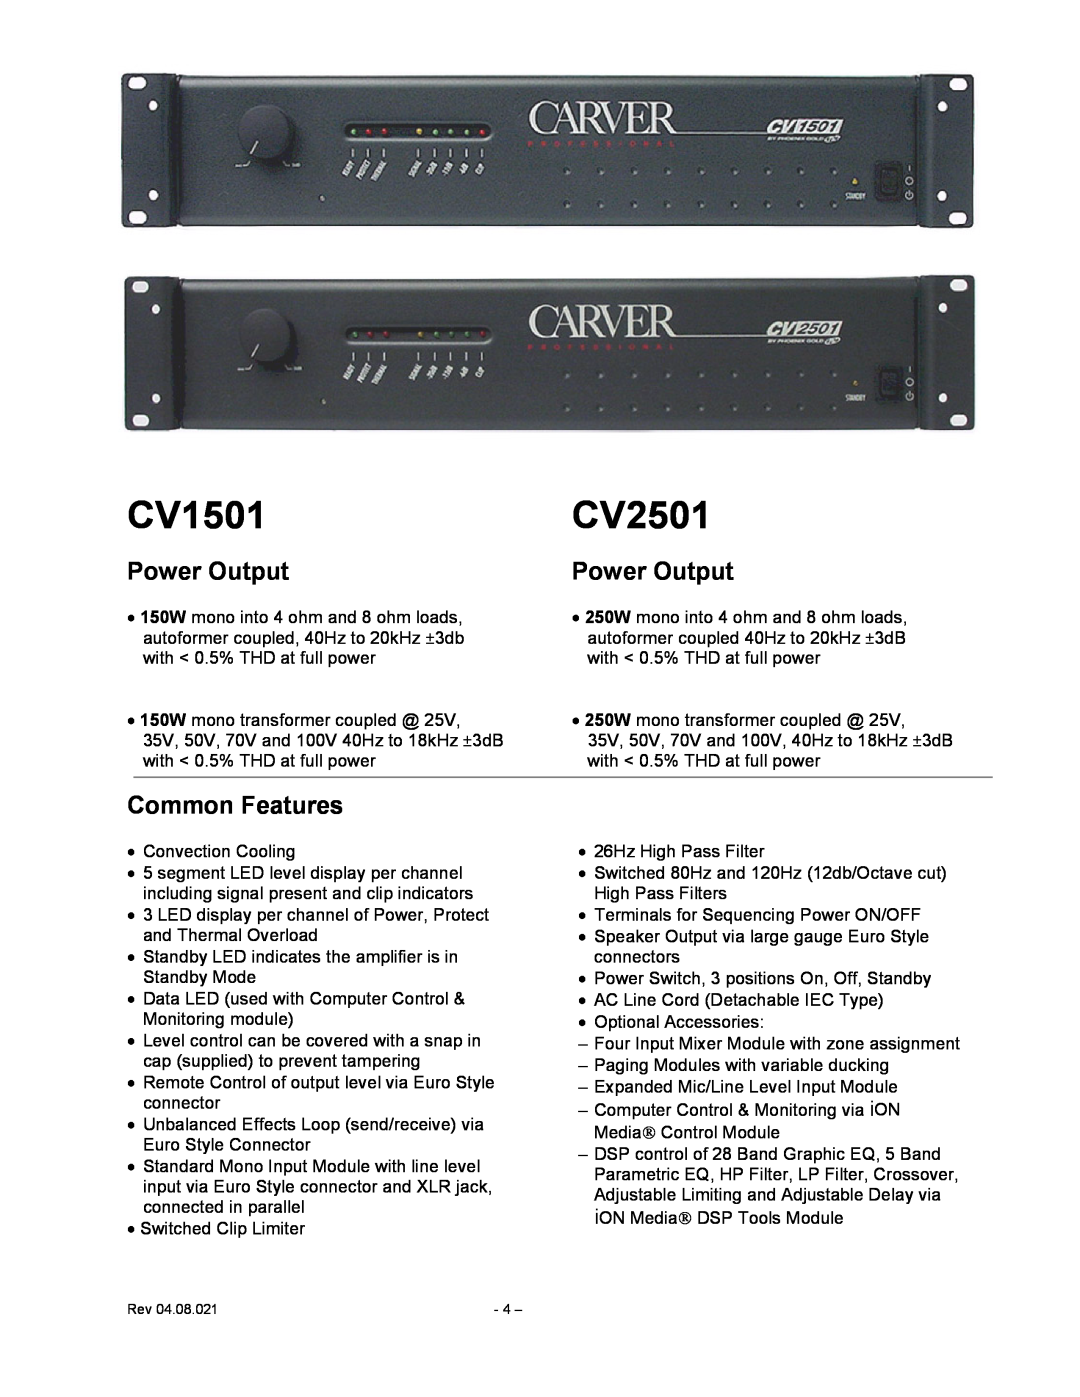 Carver CV Series user manual CV1501, CV2501, Power Output, Common Features 